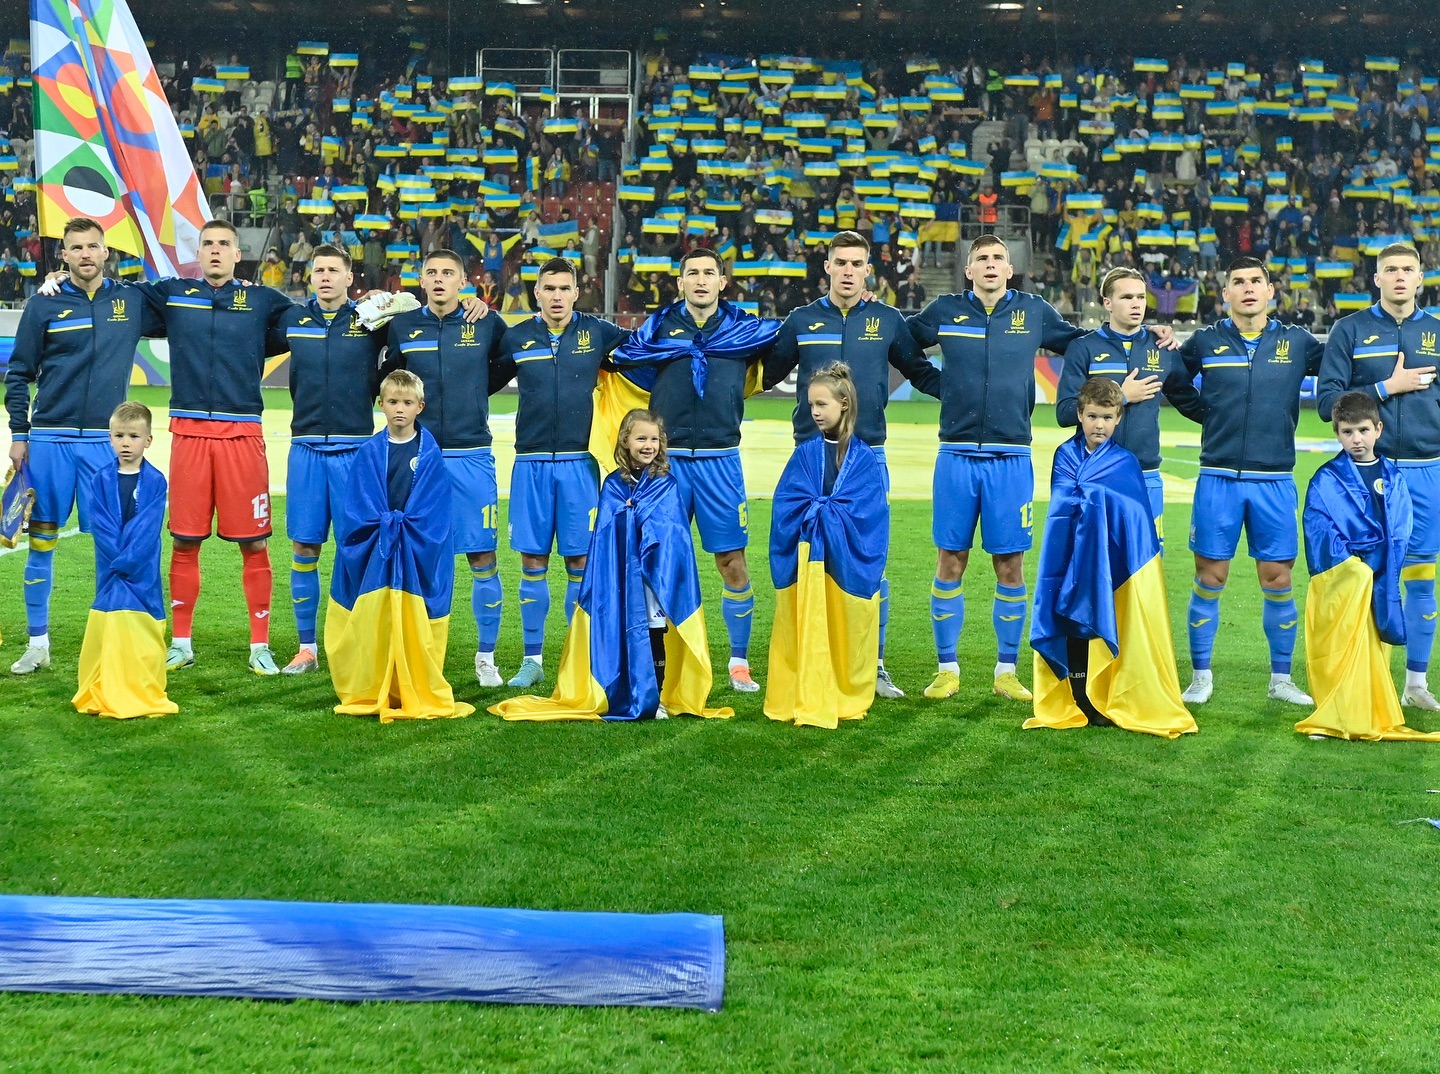 10 спортсменов, которые точно прославят Украину в 2024 году